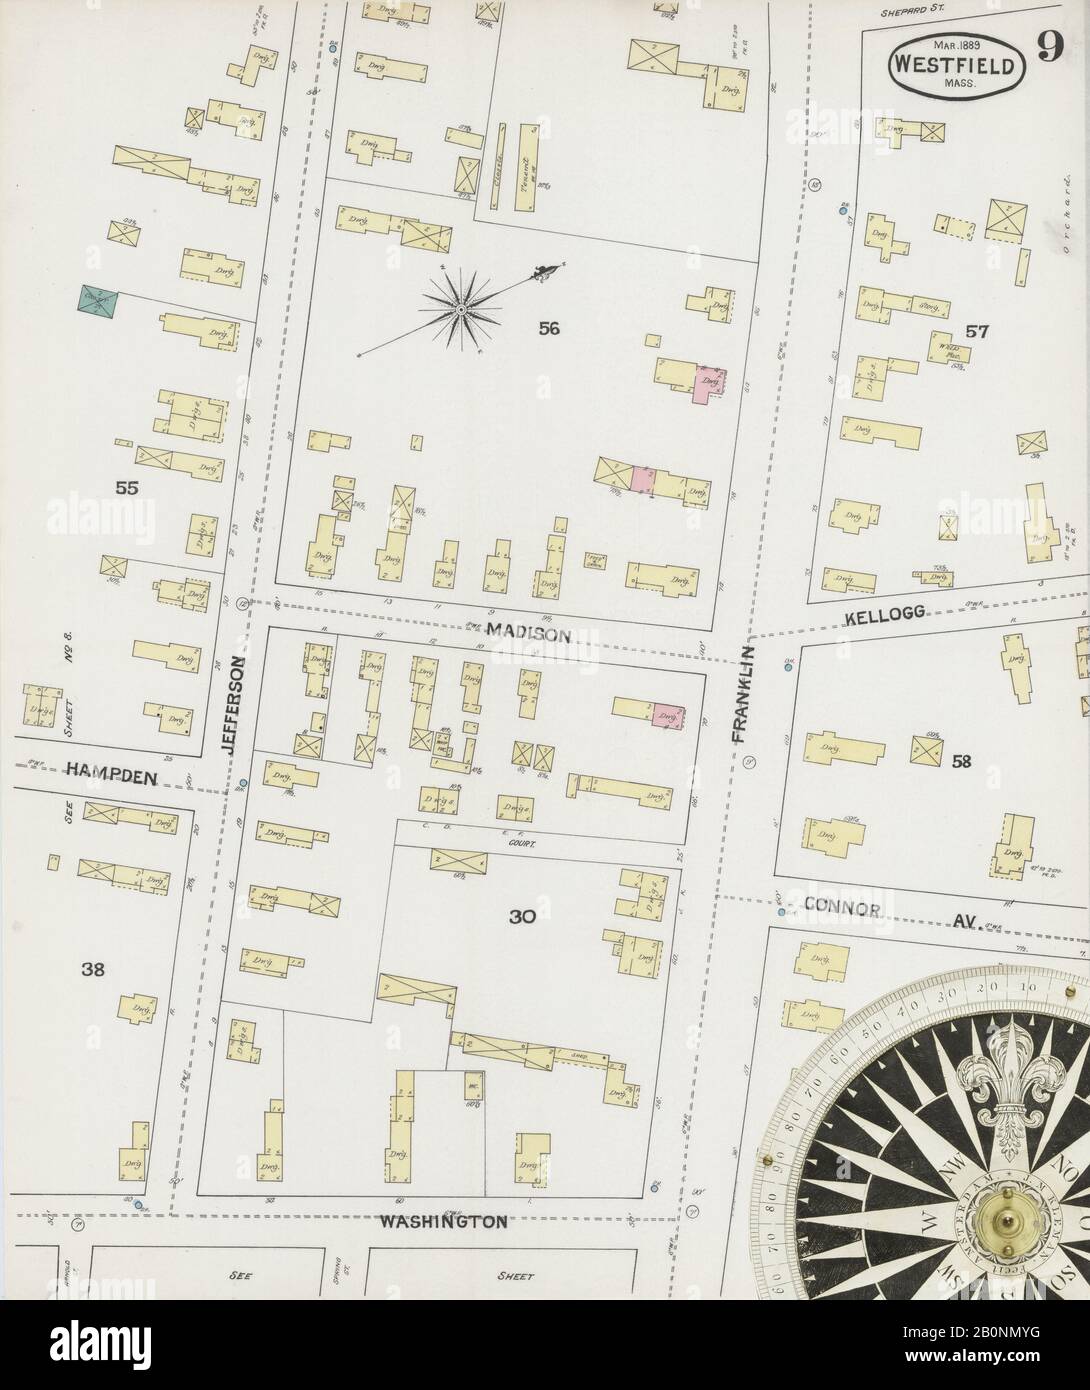 Bild 9 von Sanborn Fire Insurance Map aus Westfield, Hampden County, Massachusetts. März 1889. 11 Blatt(e), Amerika, Straßenkarte mit einem Kompass Aus Dem 19. Jahrhundert Stockfoto